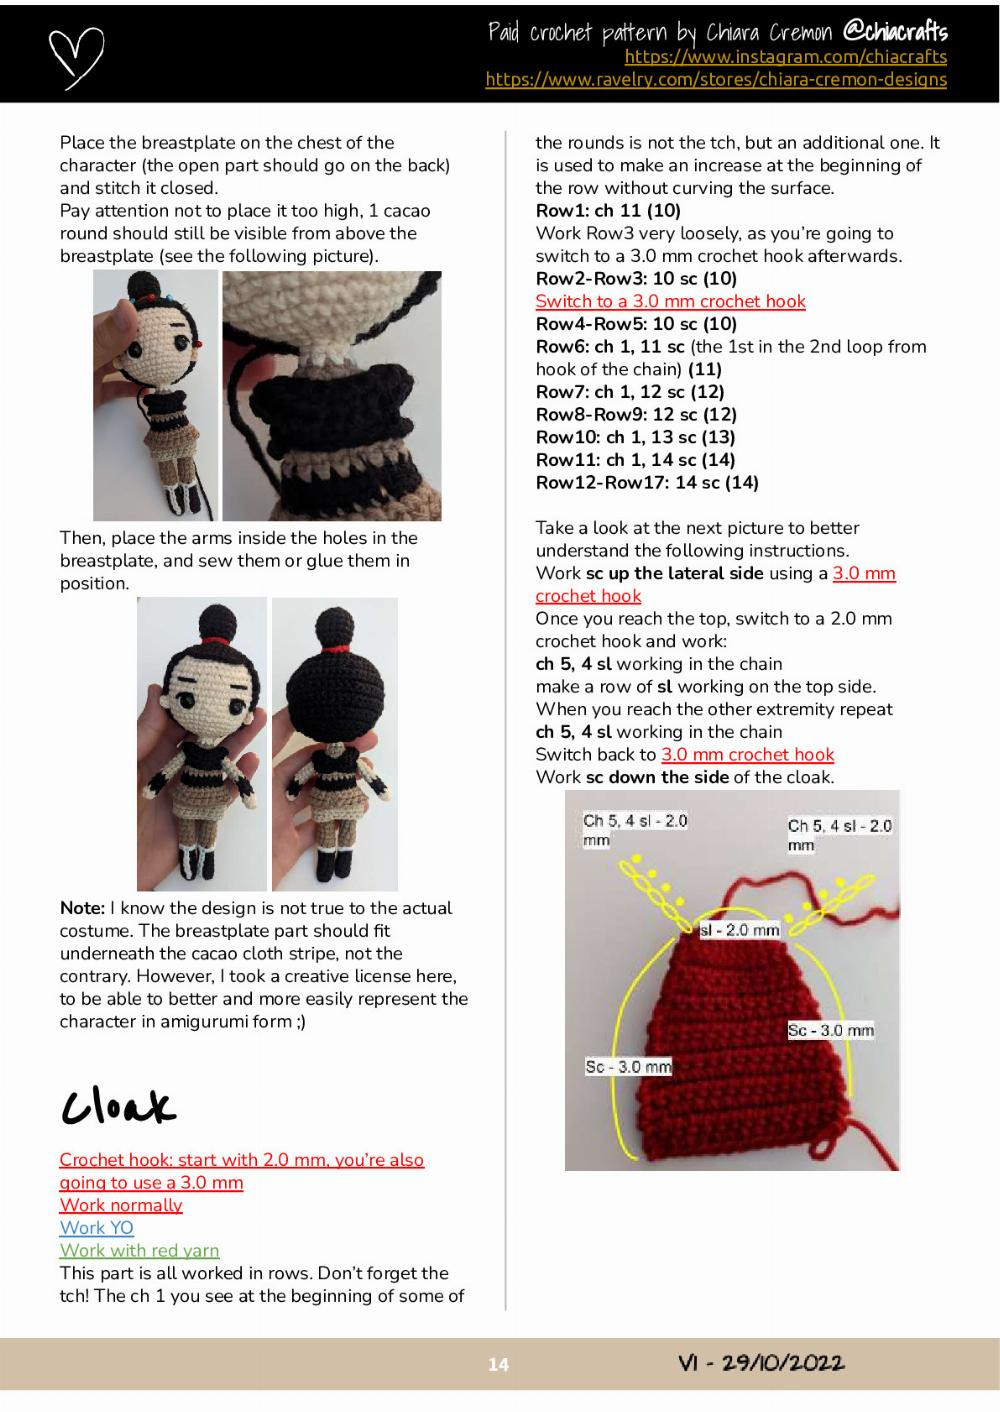 Lì Shang Crochet Pattern